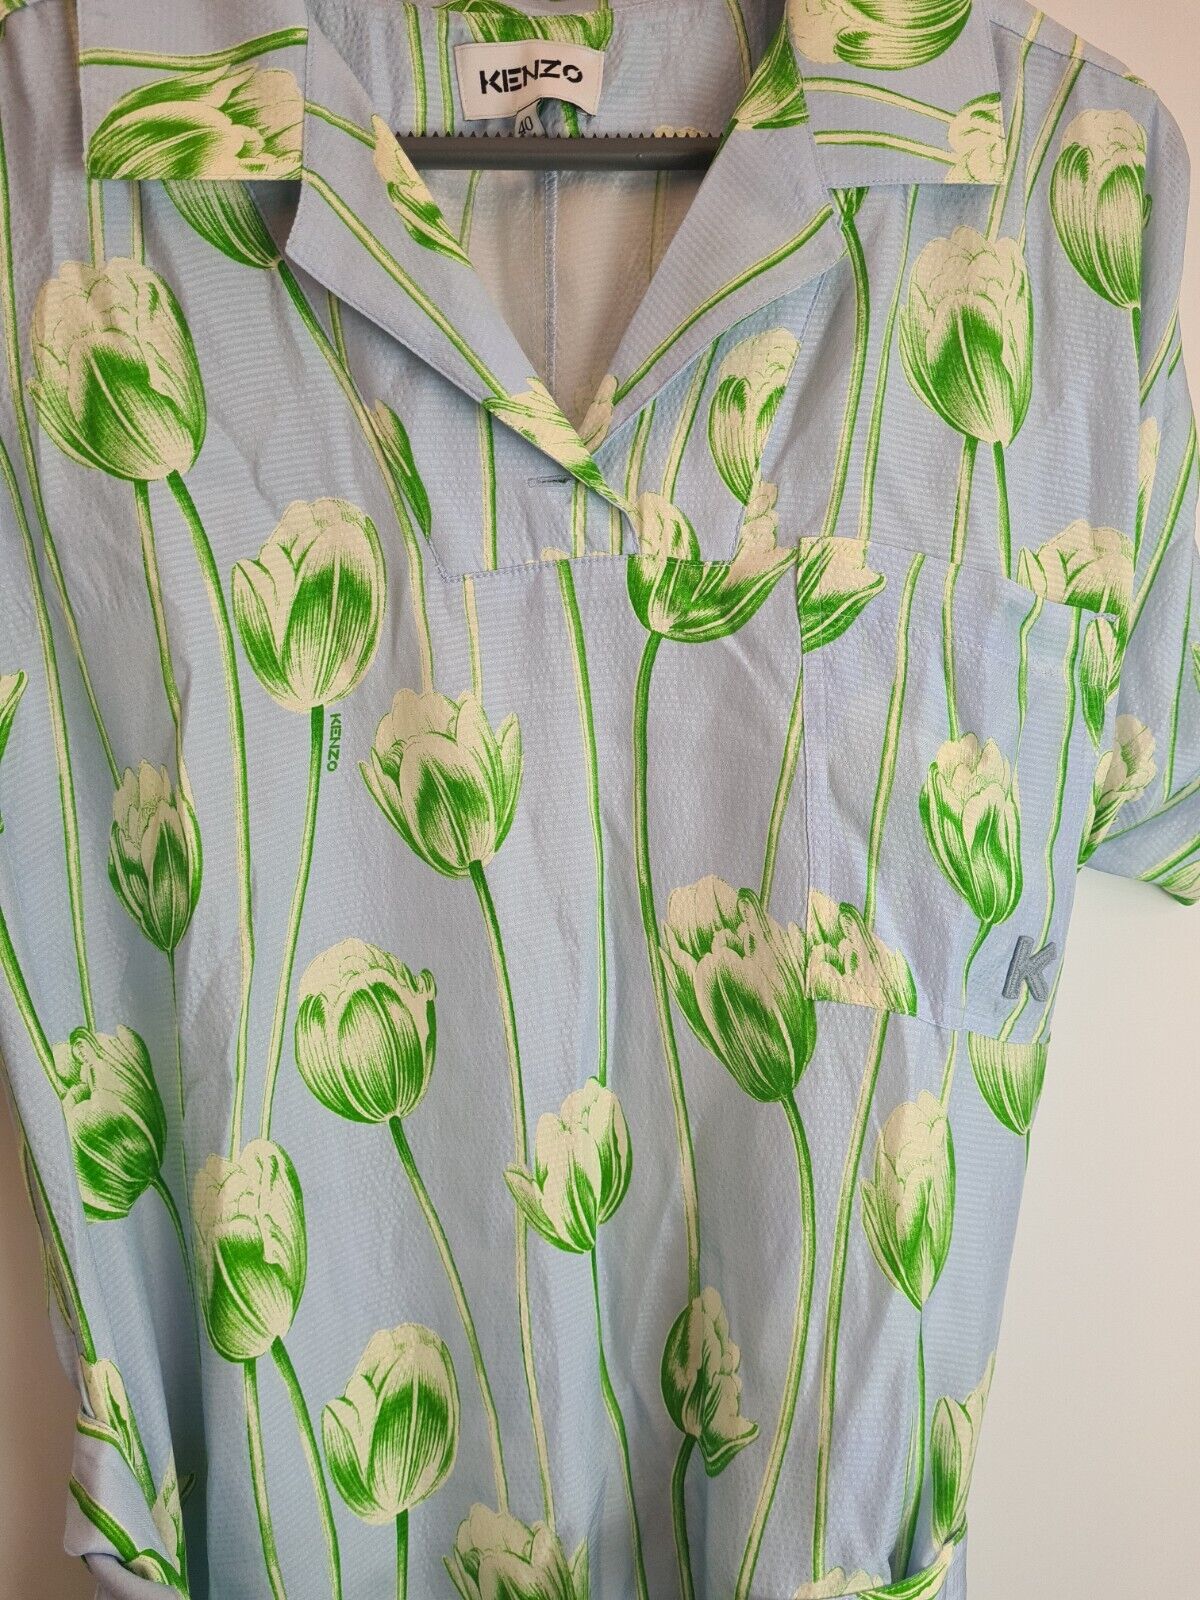 Kenzo Printed Shirting Waisted Dress Size 38/ UK S**** V149